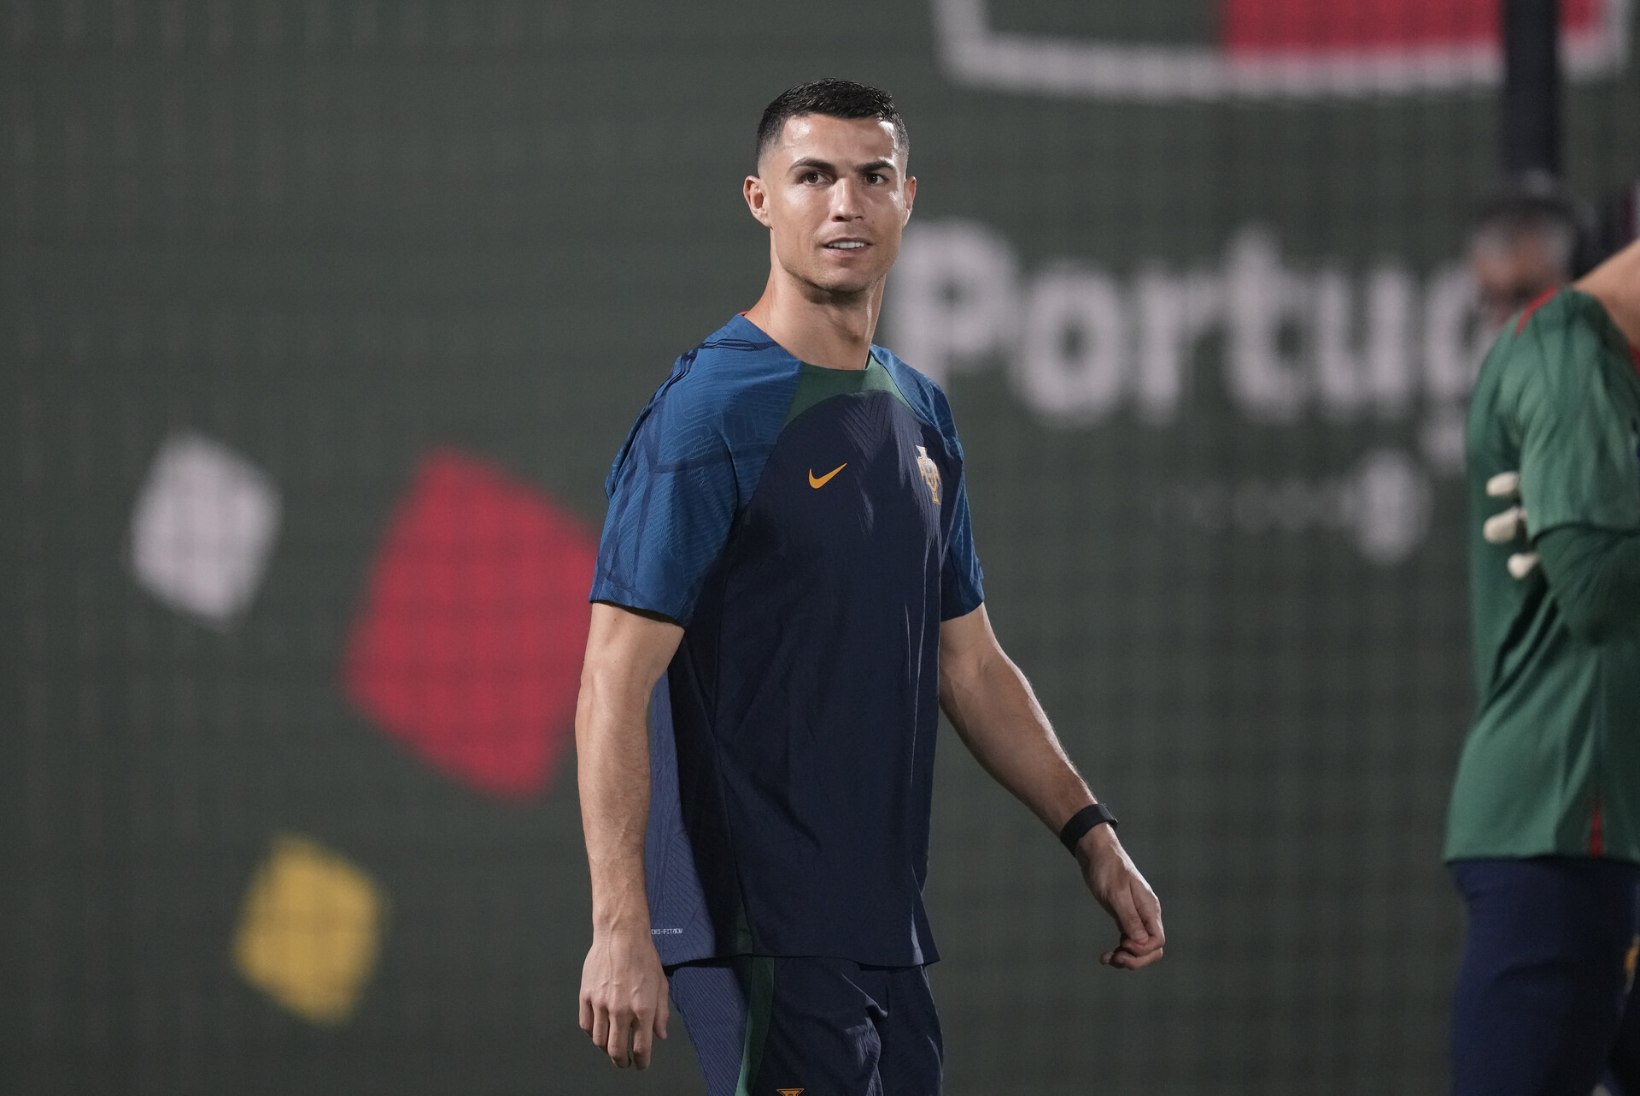 Ronaldo sai mängukeelu ja kopsaka rahatrahvi